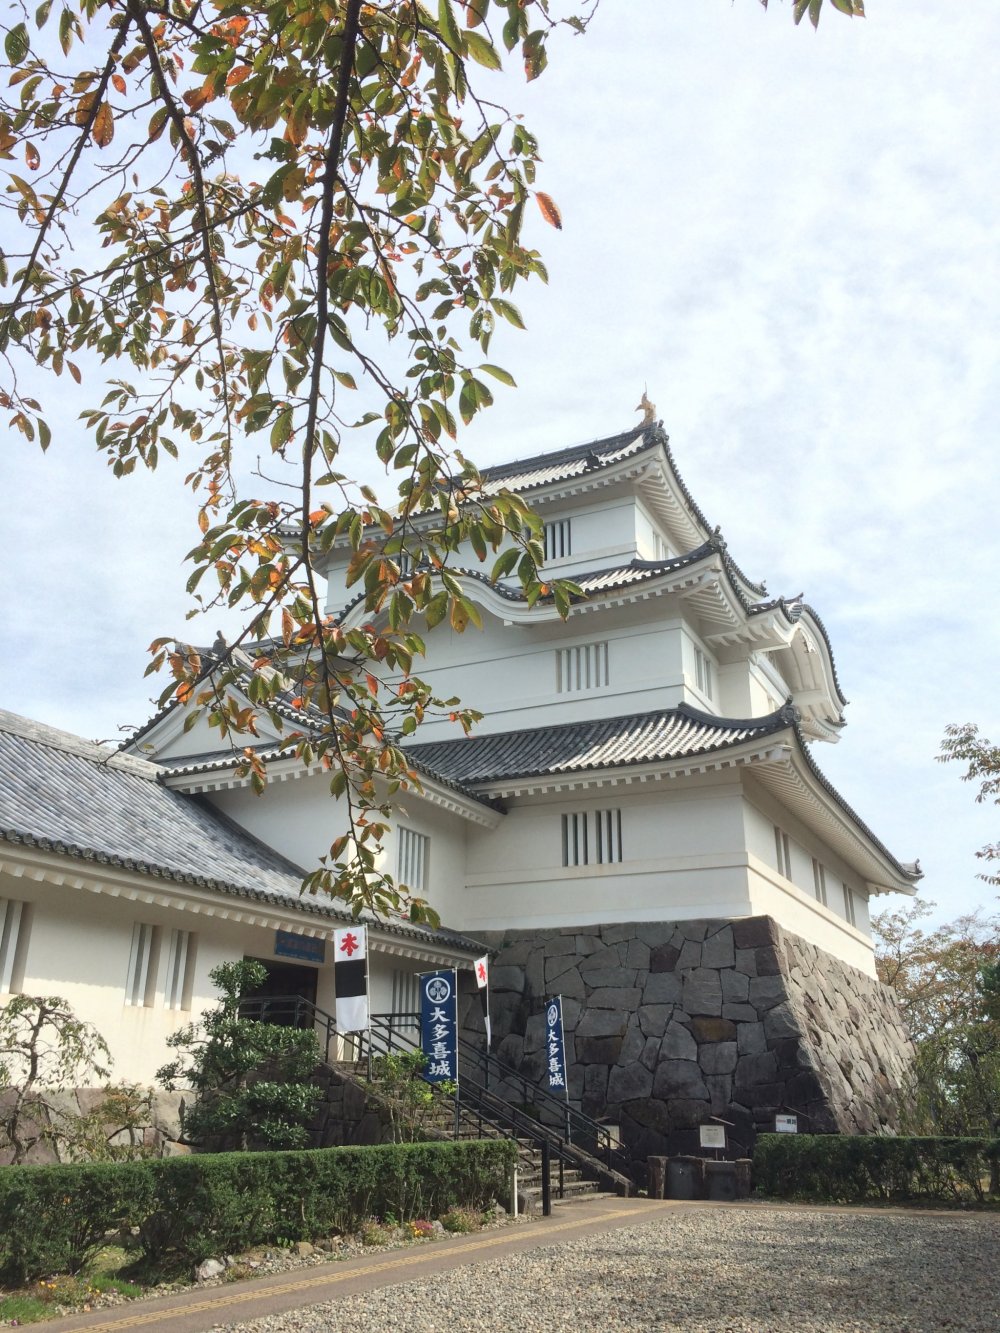 Thành Osaka nằm ở Otaki, một thị trấn nhỏ nhưng giàu lịch sử ở Chiba.